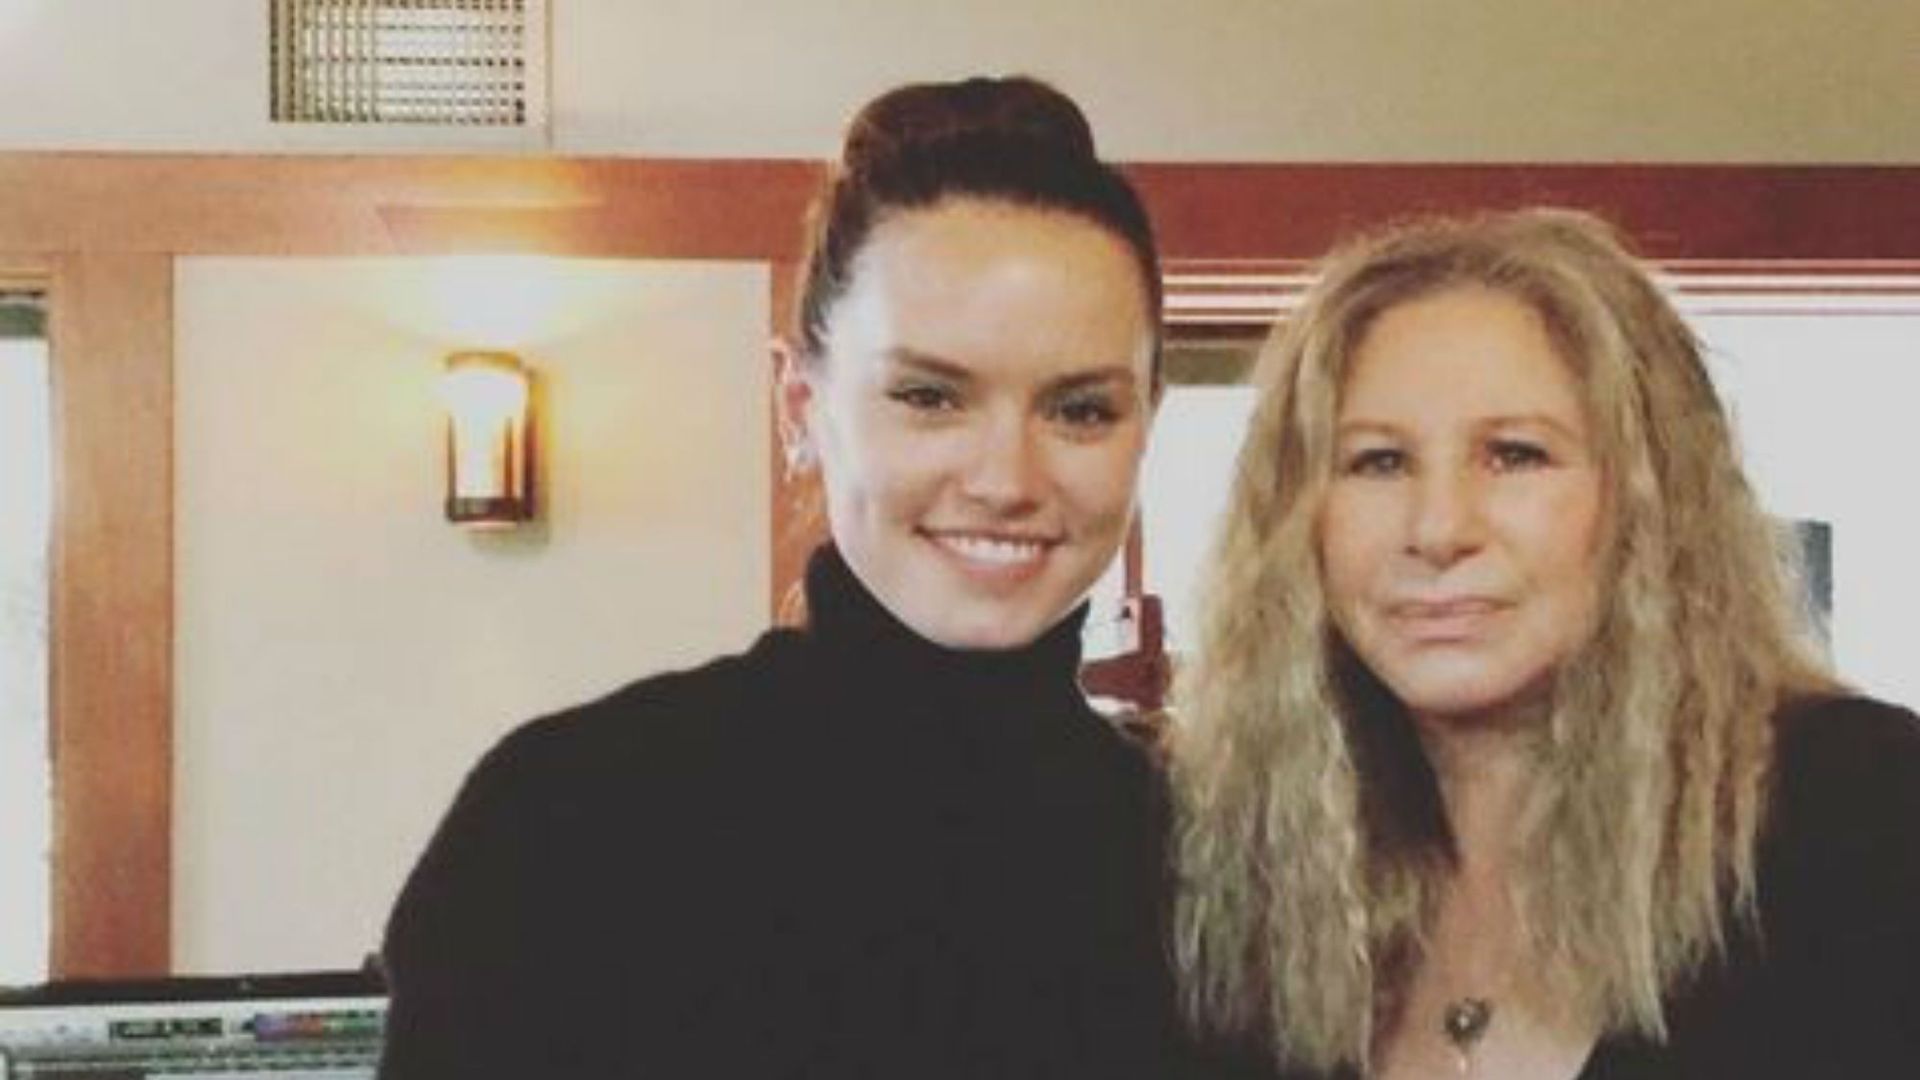 La comédienne britannique a posté sur son compte Instagram cette photo d'elle aux côtés de Barbra Streisand